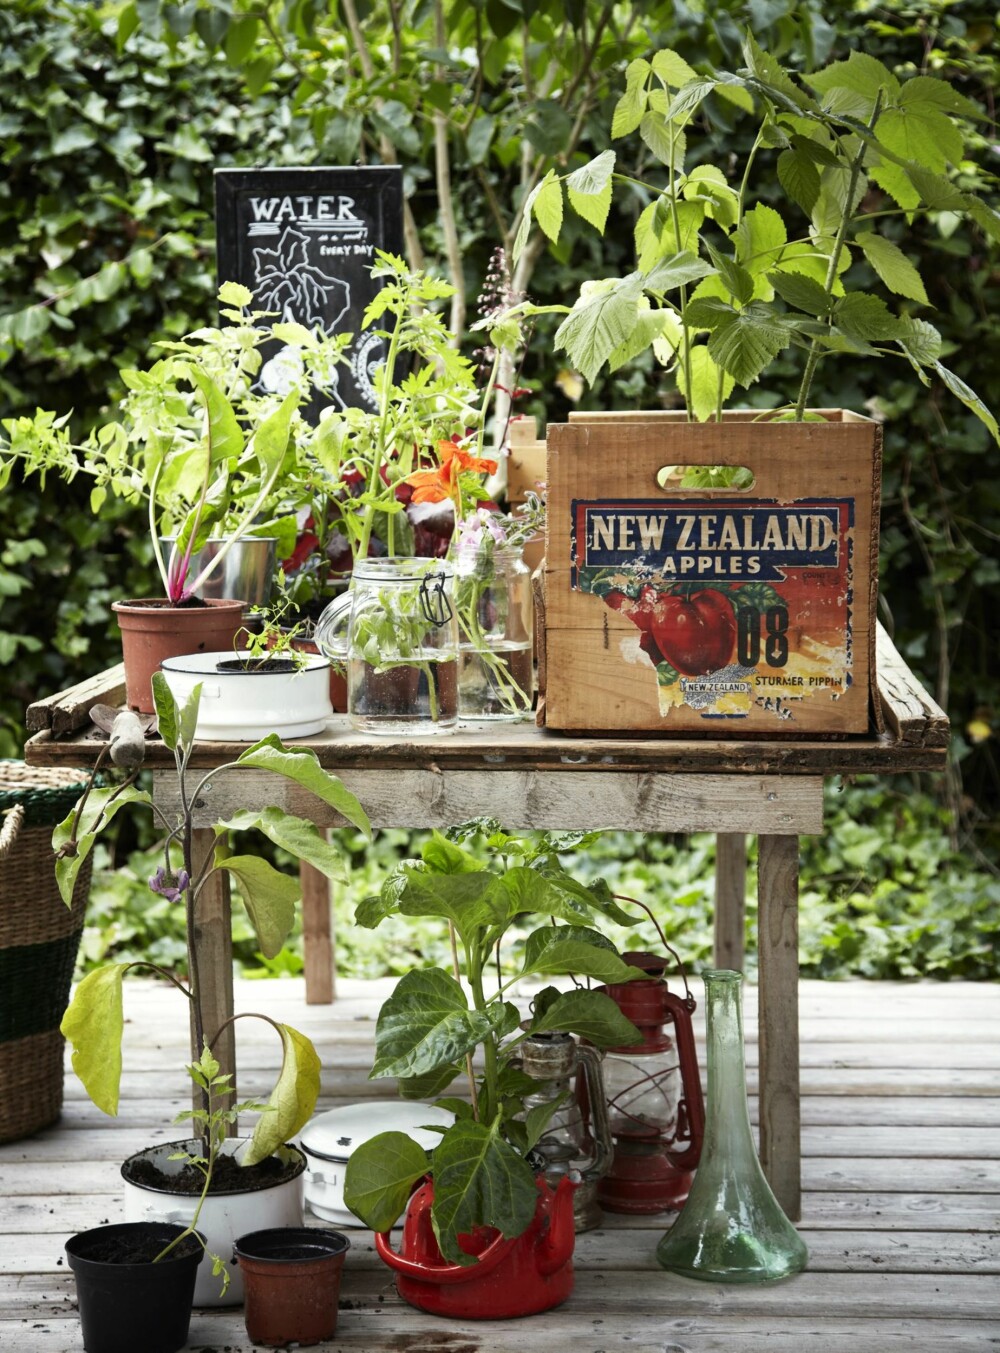 PLANTEBORD: Gi gjerne plantene et eget bord der du kan dyrke din interesse. Det finnes mange fine og rimelige plantebord å få kjøpt, blant annet på Biltema.